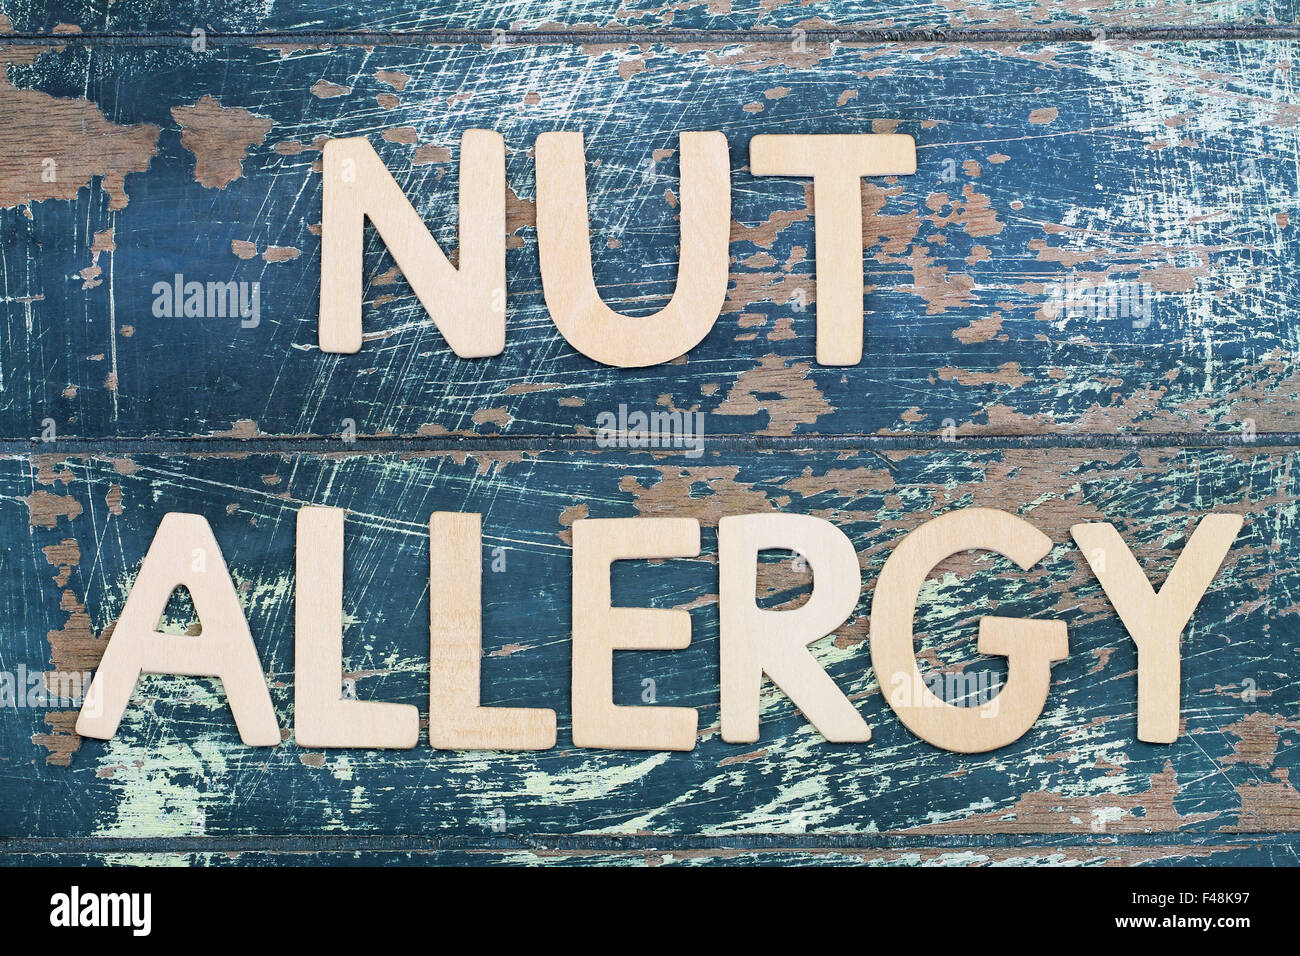 La tuerca alergia escrito sobre superficie de madera rústica Foto de stock